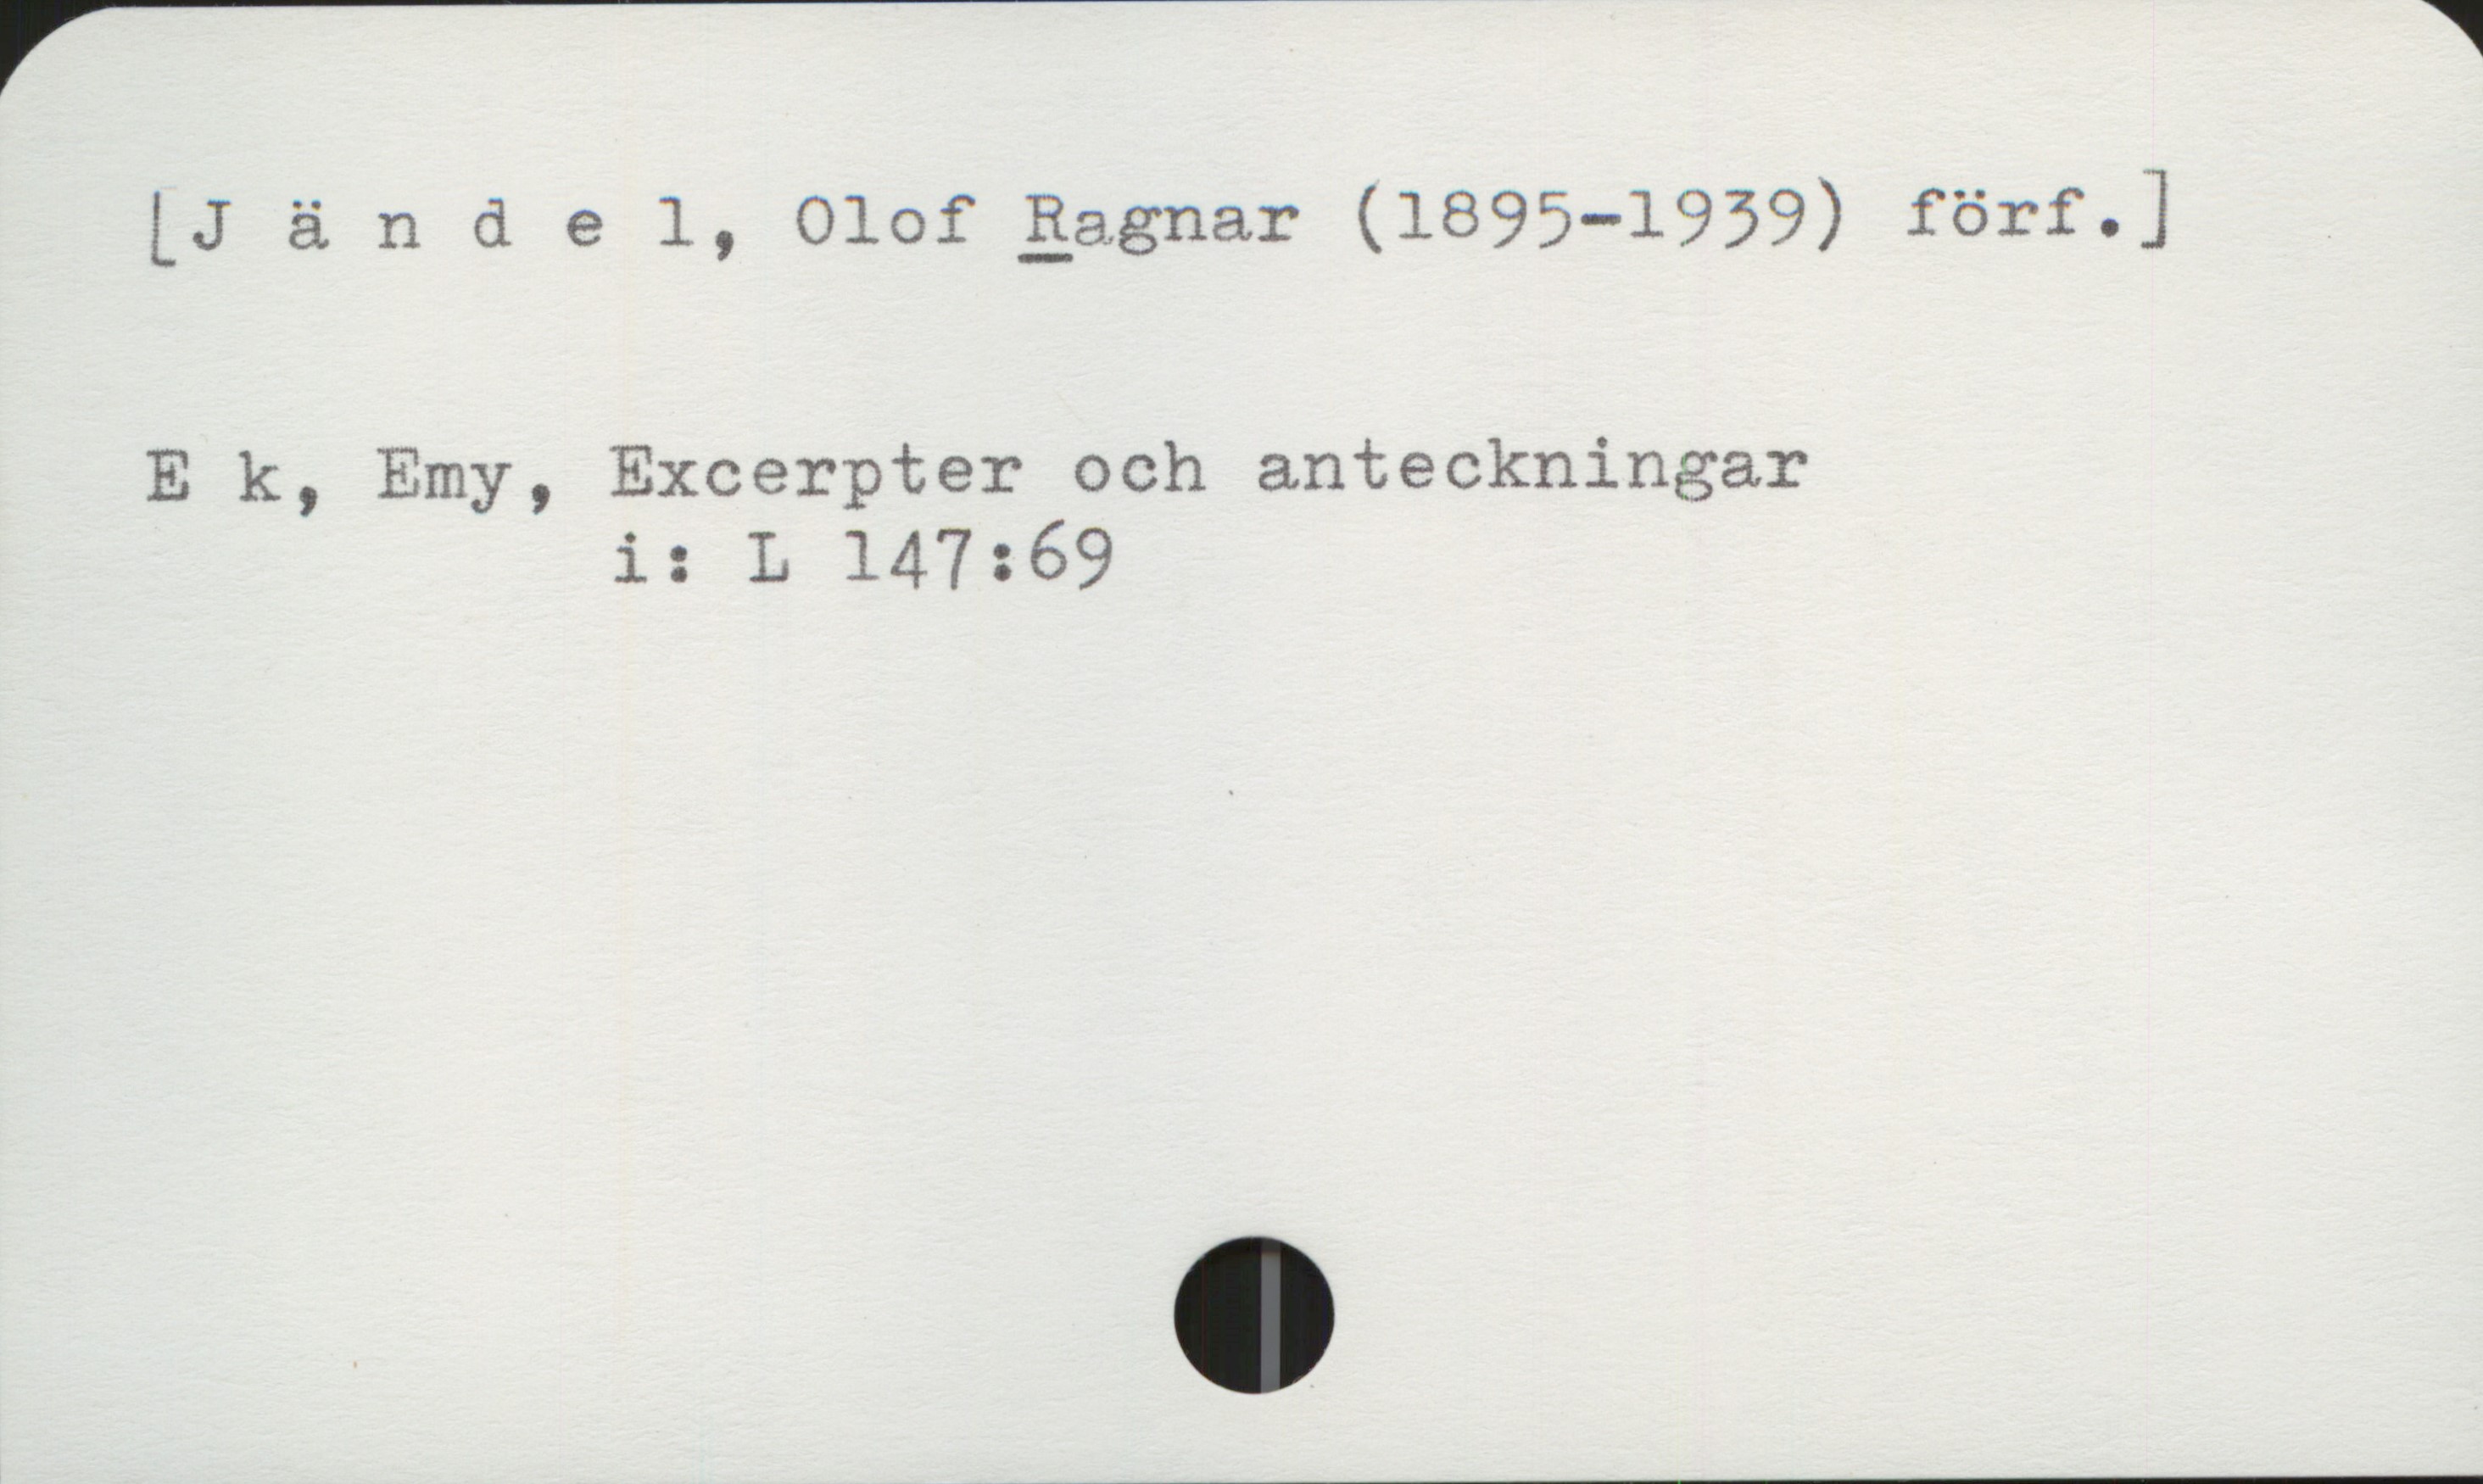 Jändel, Ragnar (1895-1939) [Jändel, Olof Ragnar (1895-1939) förf.]

Ek, Emy, Excerpter och anteckningar
                i: L 147:69